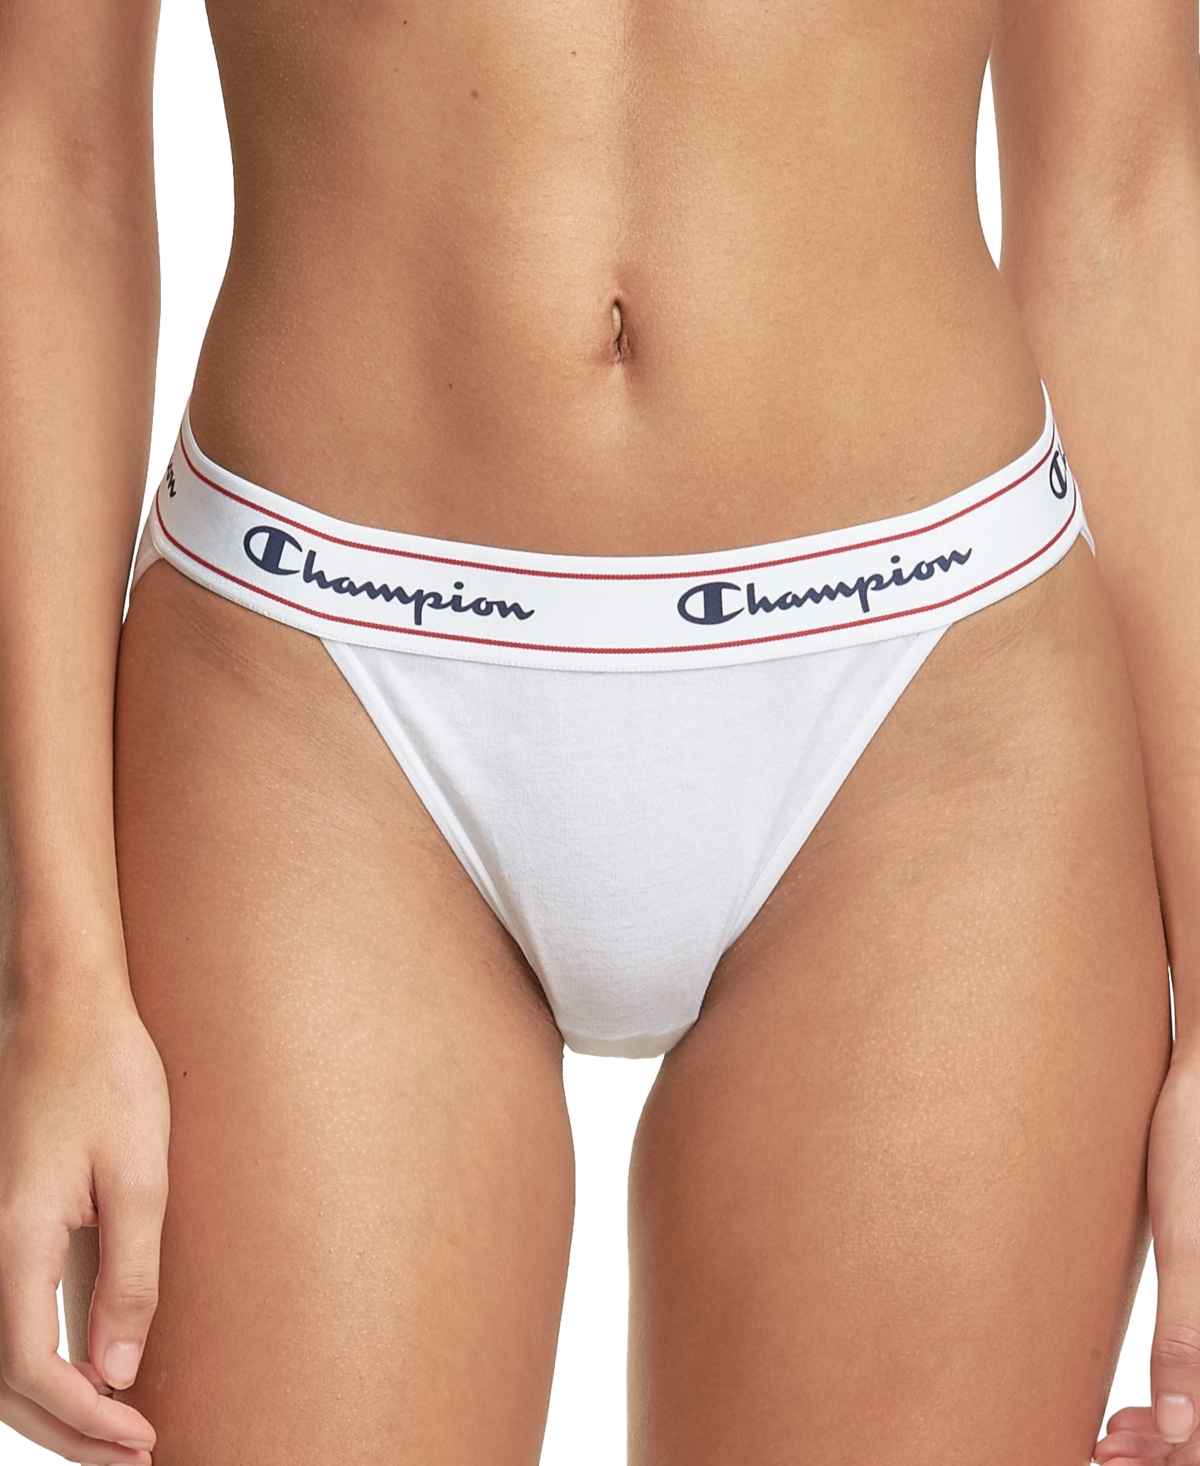  Champion: Women's Underwear